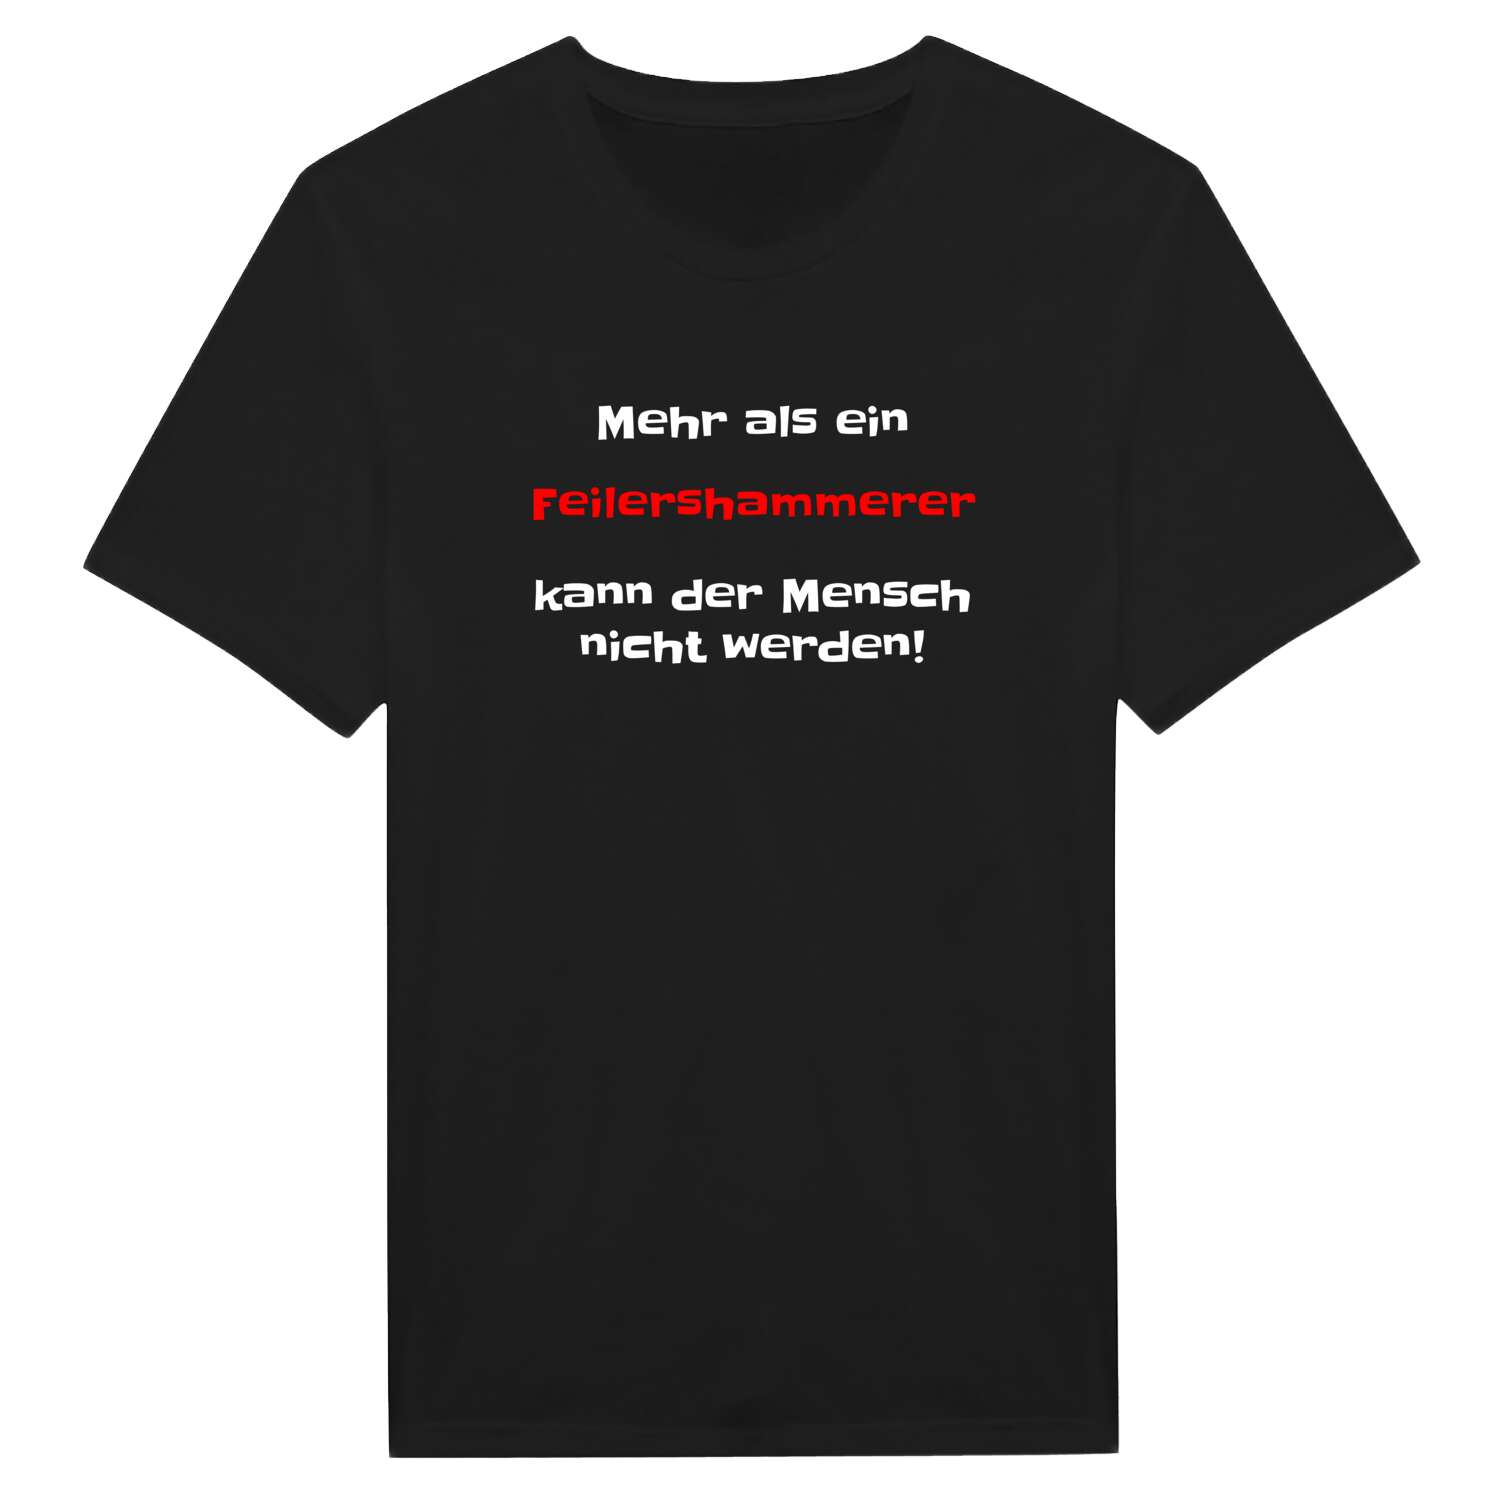 Feilershammer T-Shirt »Mehr als ein«